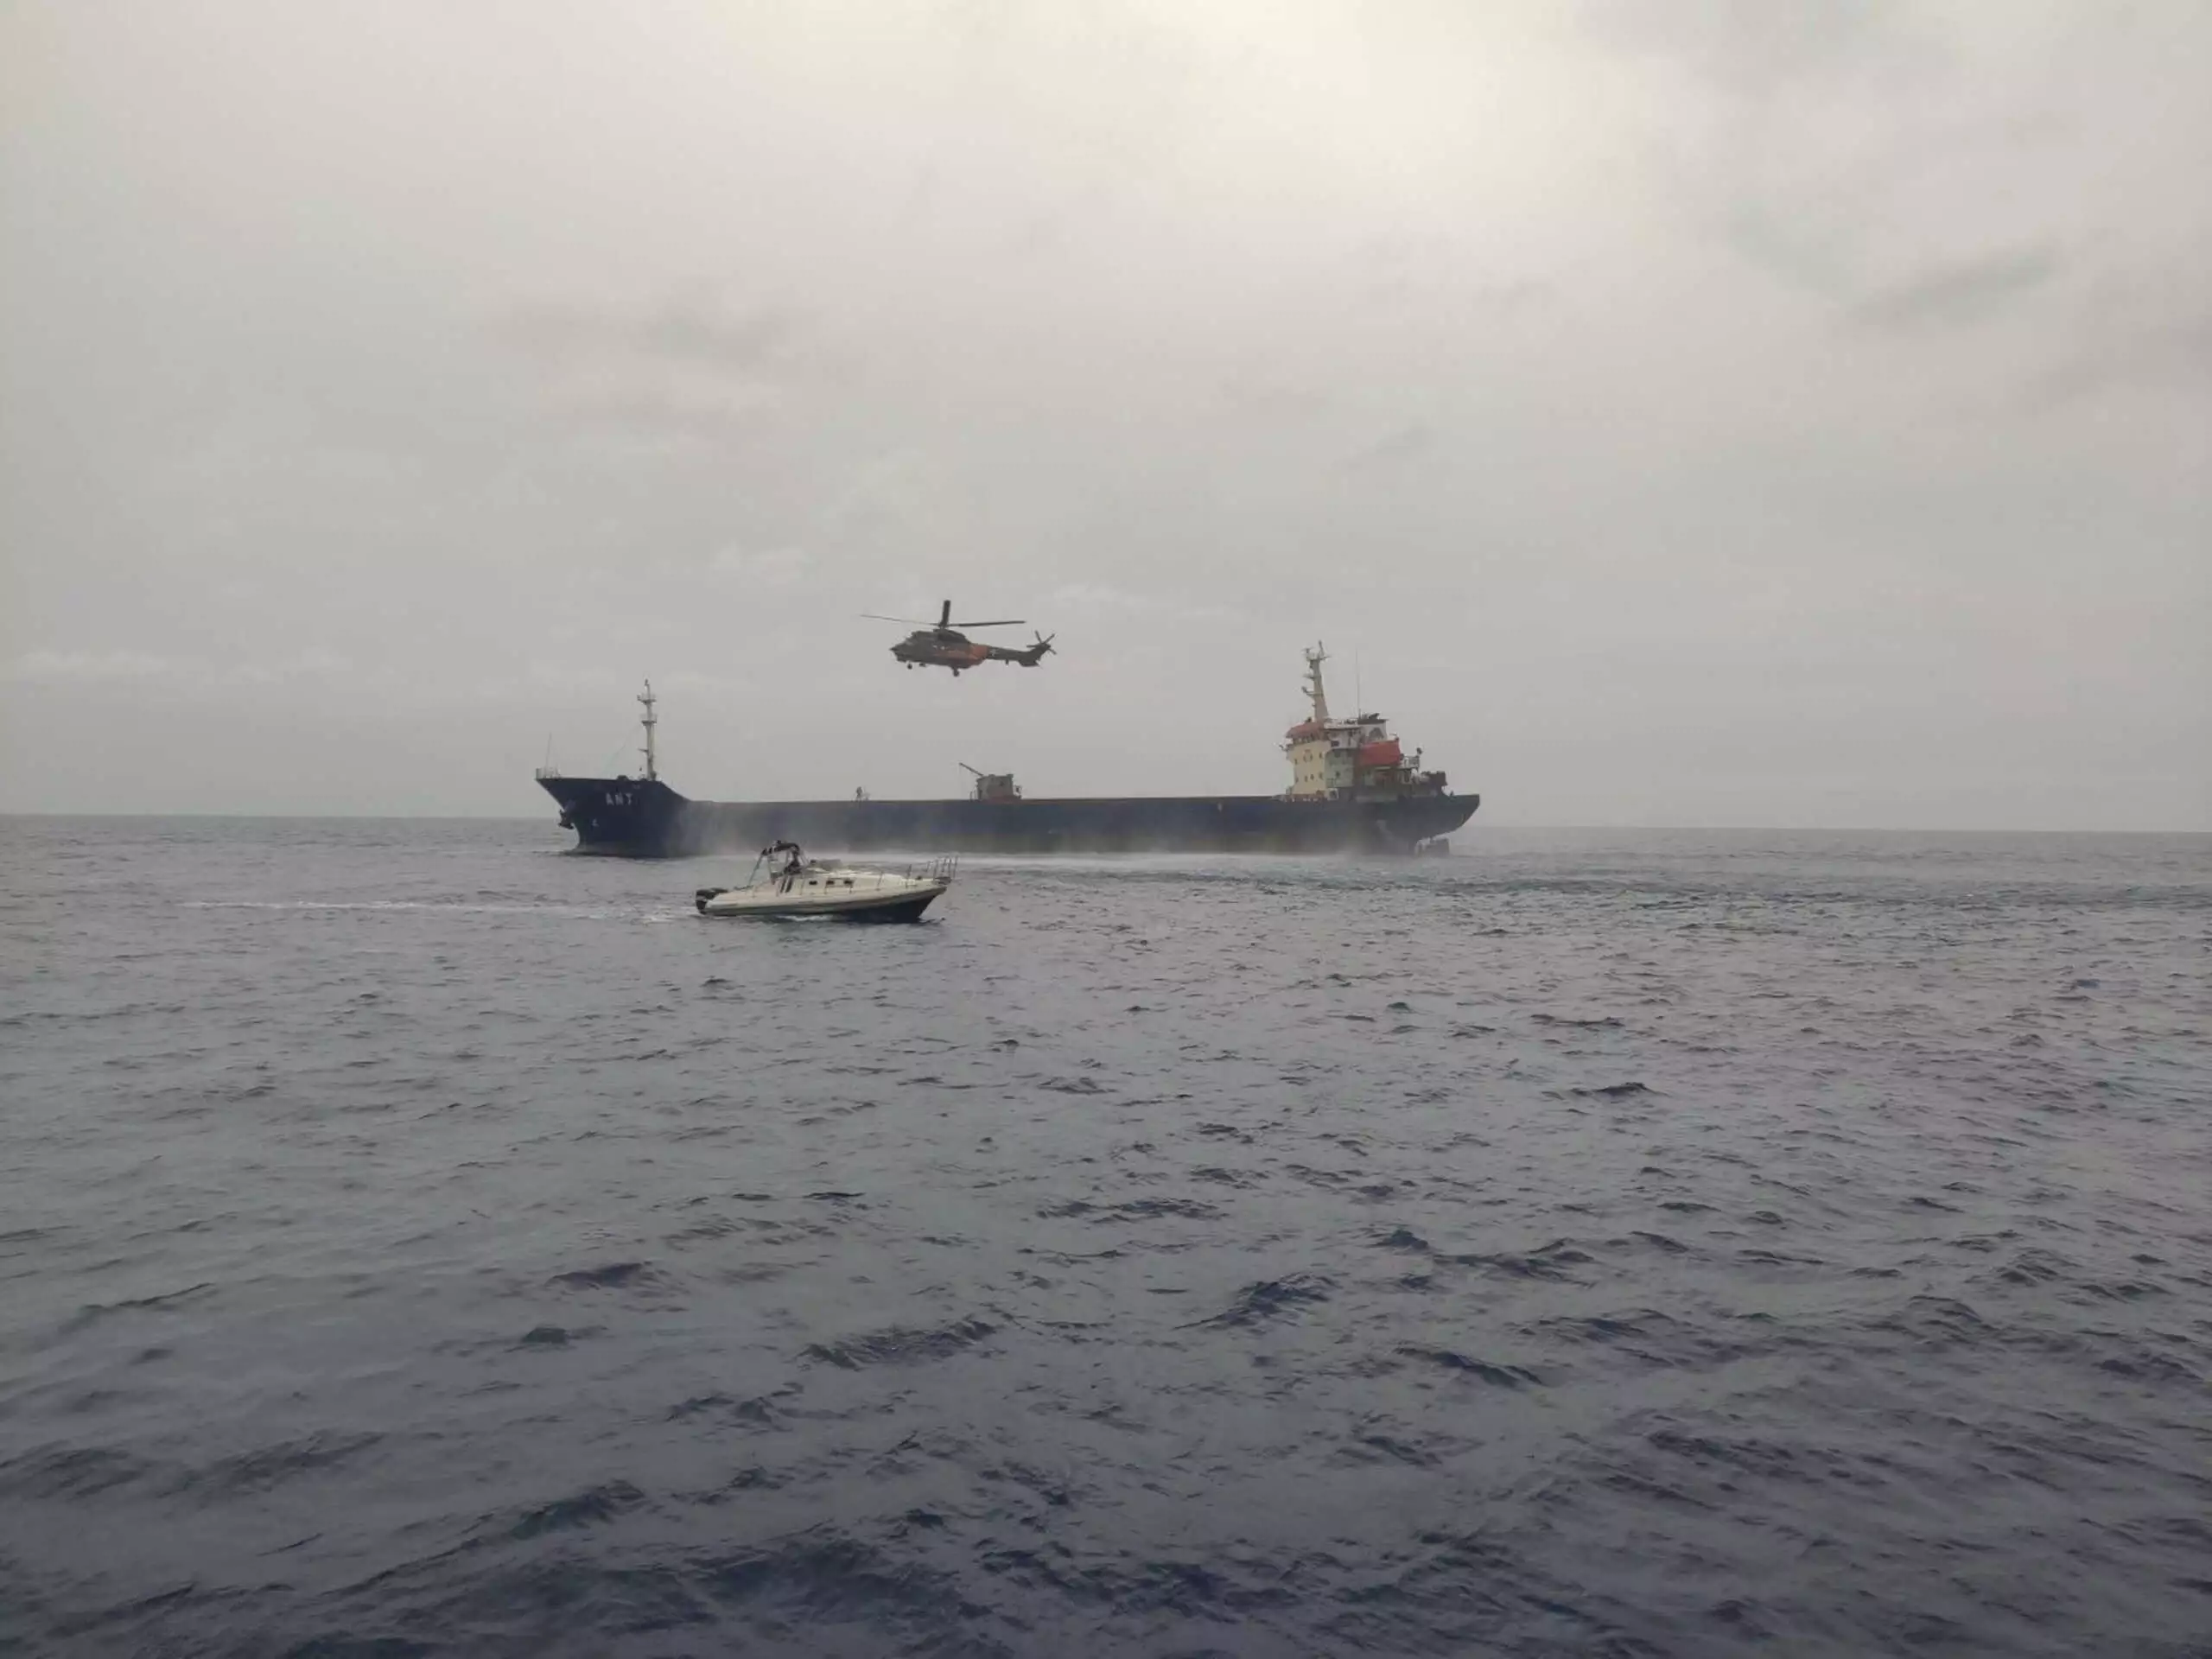 Μηχανική βλάβη σε φορτηγό πλοίο με 15 ναυτικούς κοντά στο λιμάνι της Μυτιλήνης